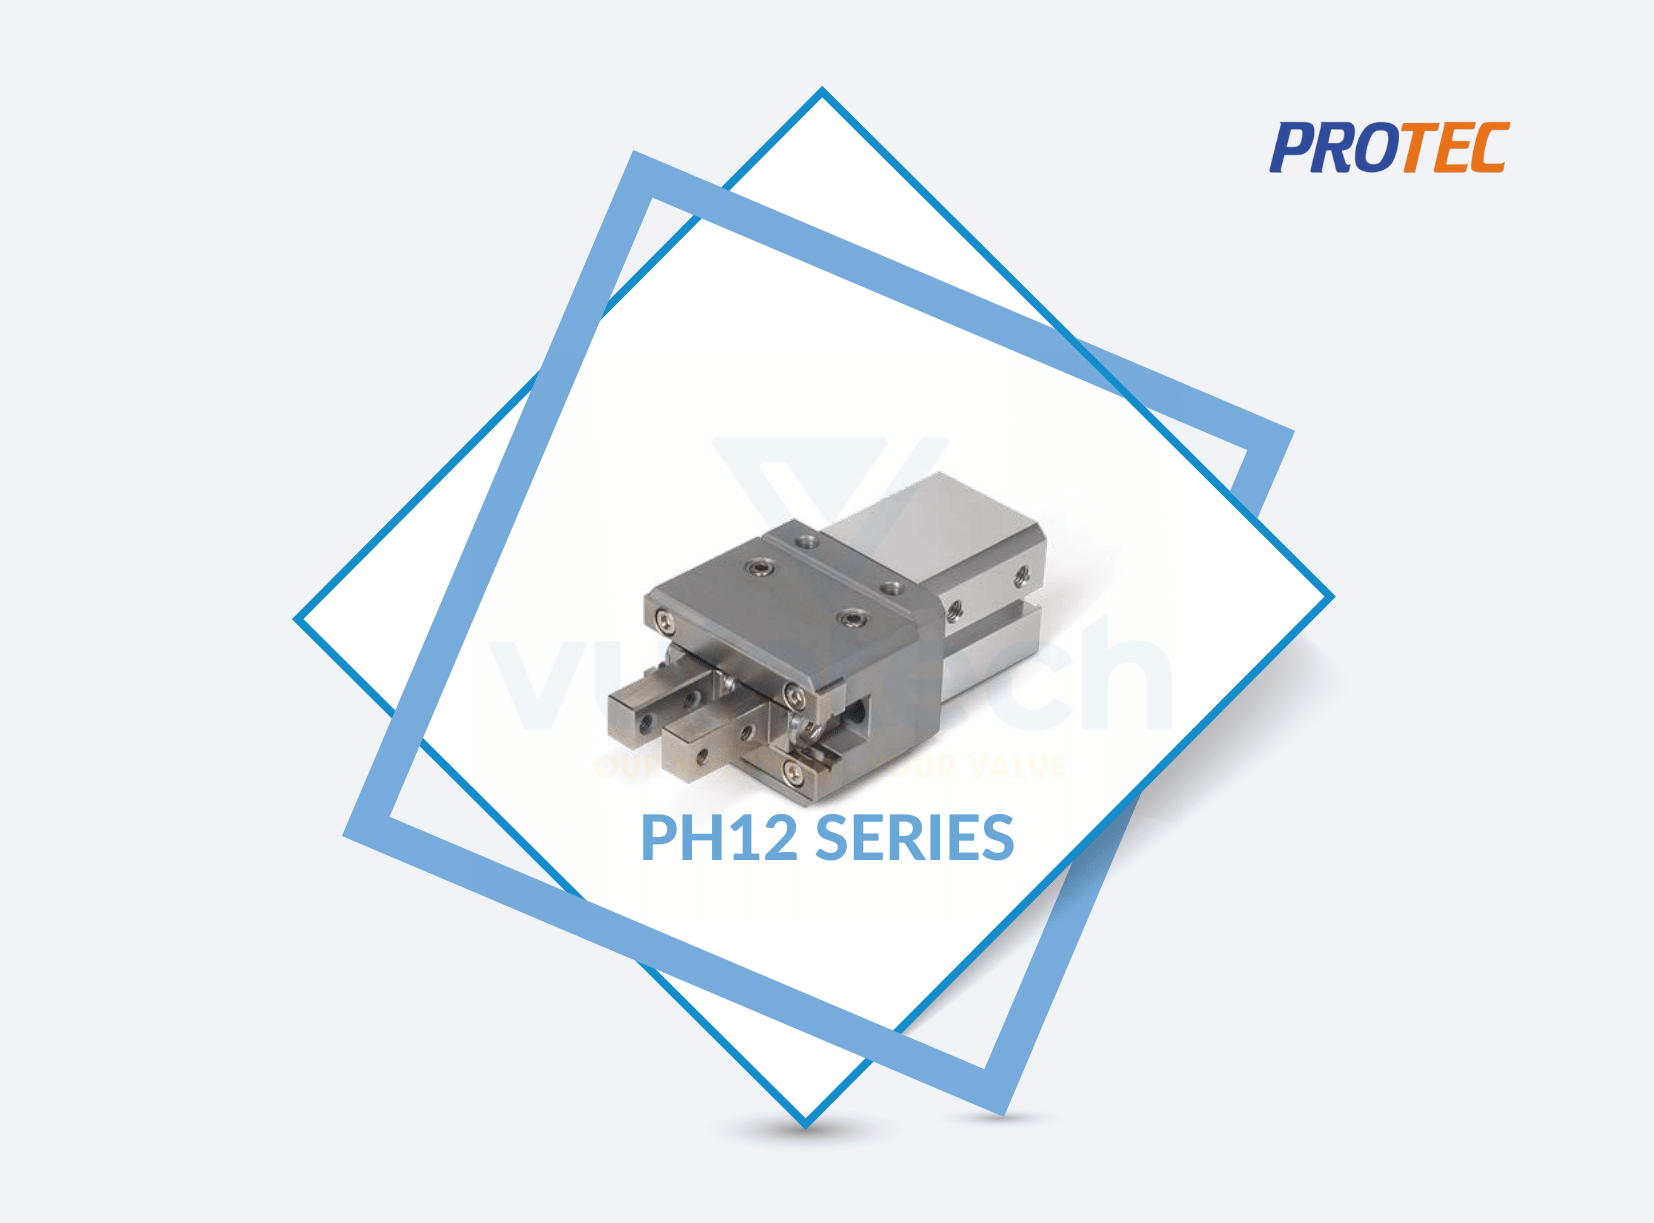 PH12 Series Protec